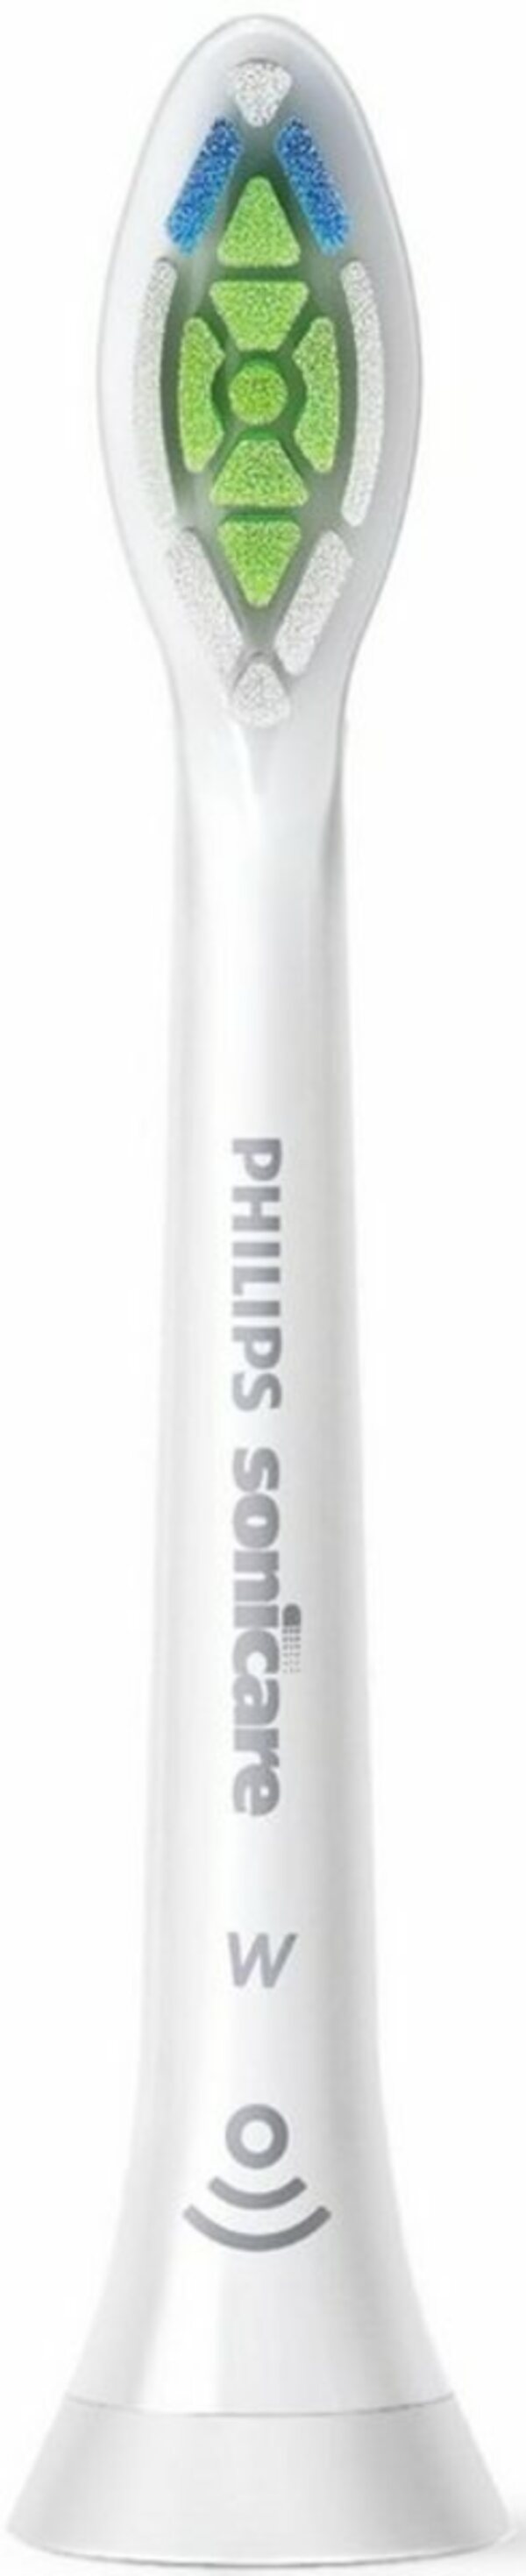 Bild 1 von Philips Sonicare Aufsteckbürsten »Optimal White Standard«, für besonderes weiße Zähne